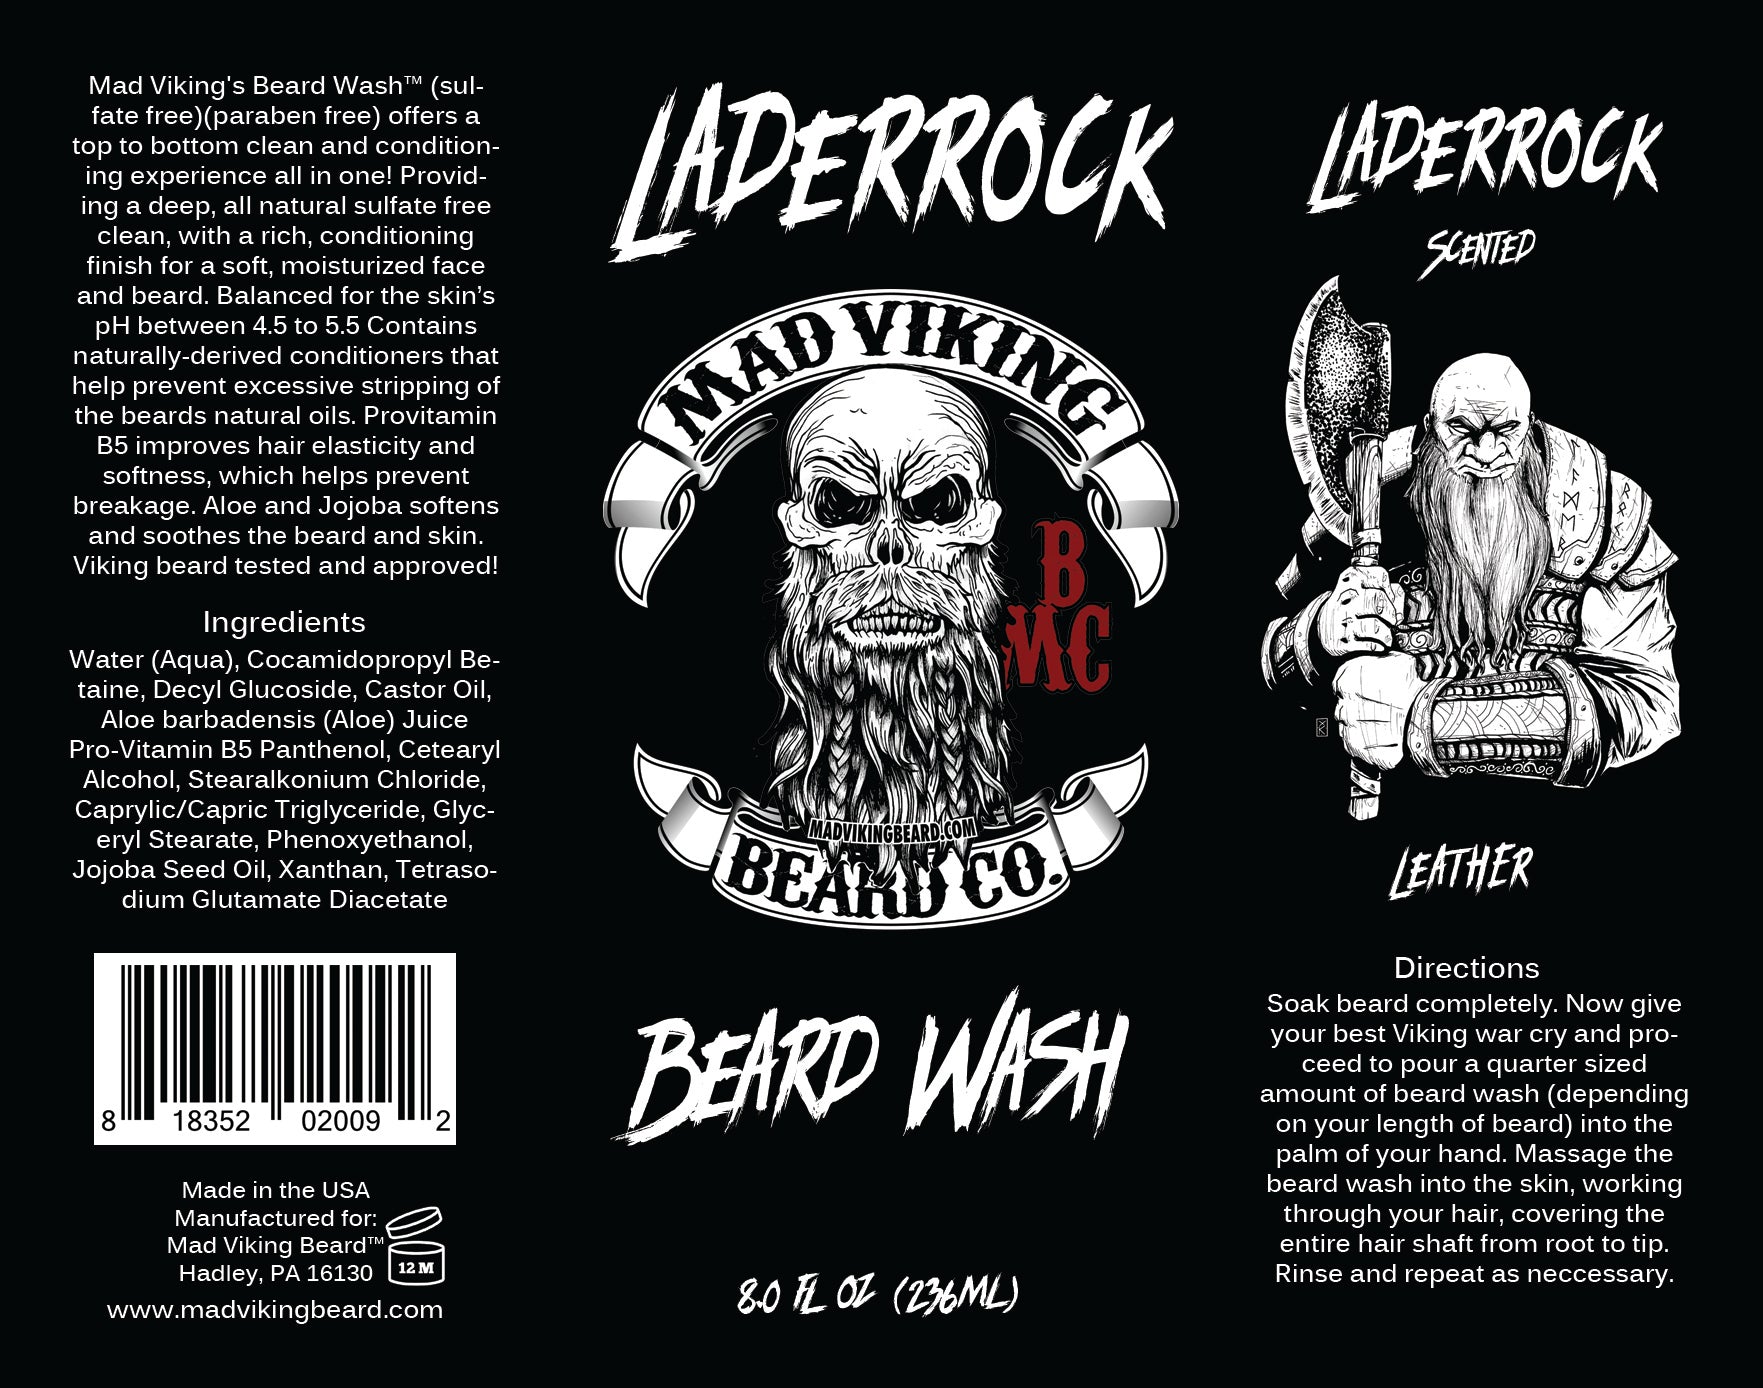 Mad Viking Laderrock Beard Wash